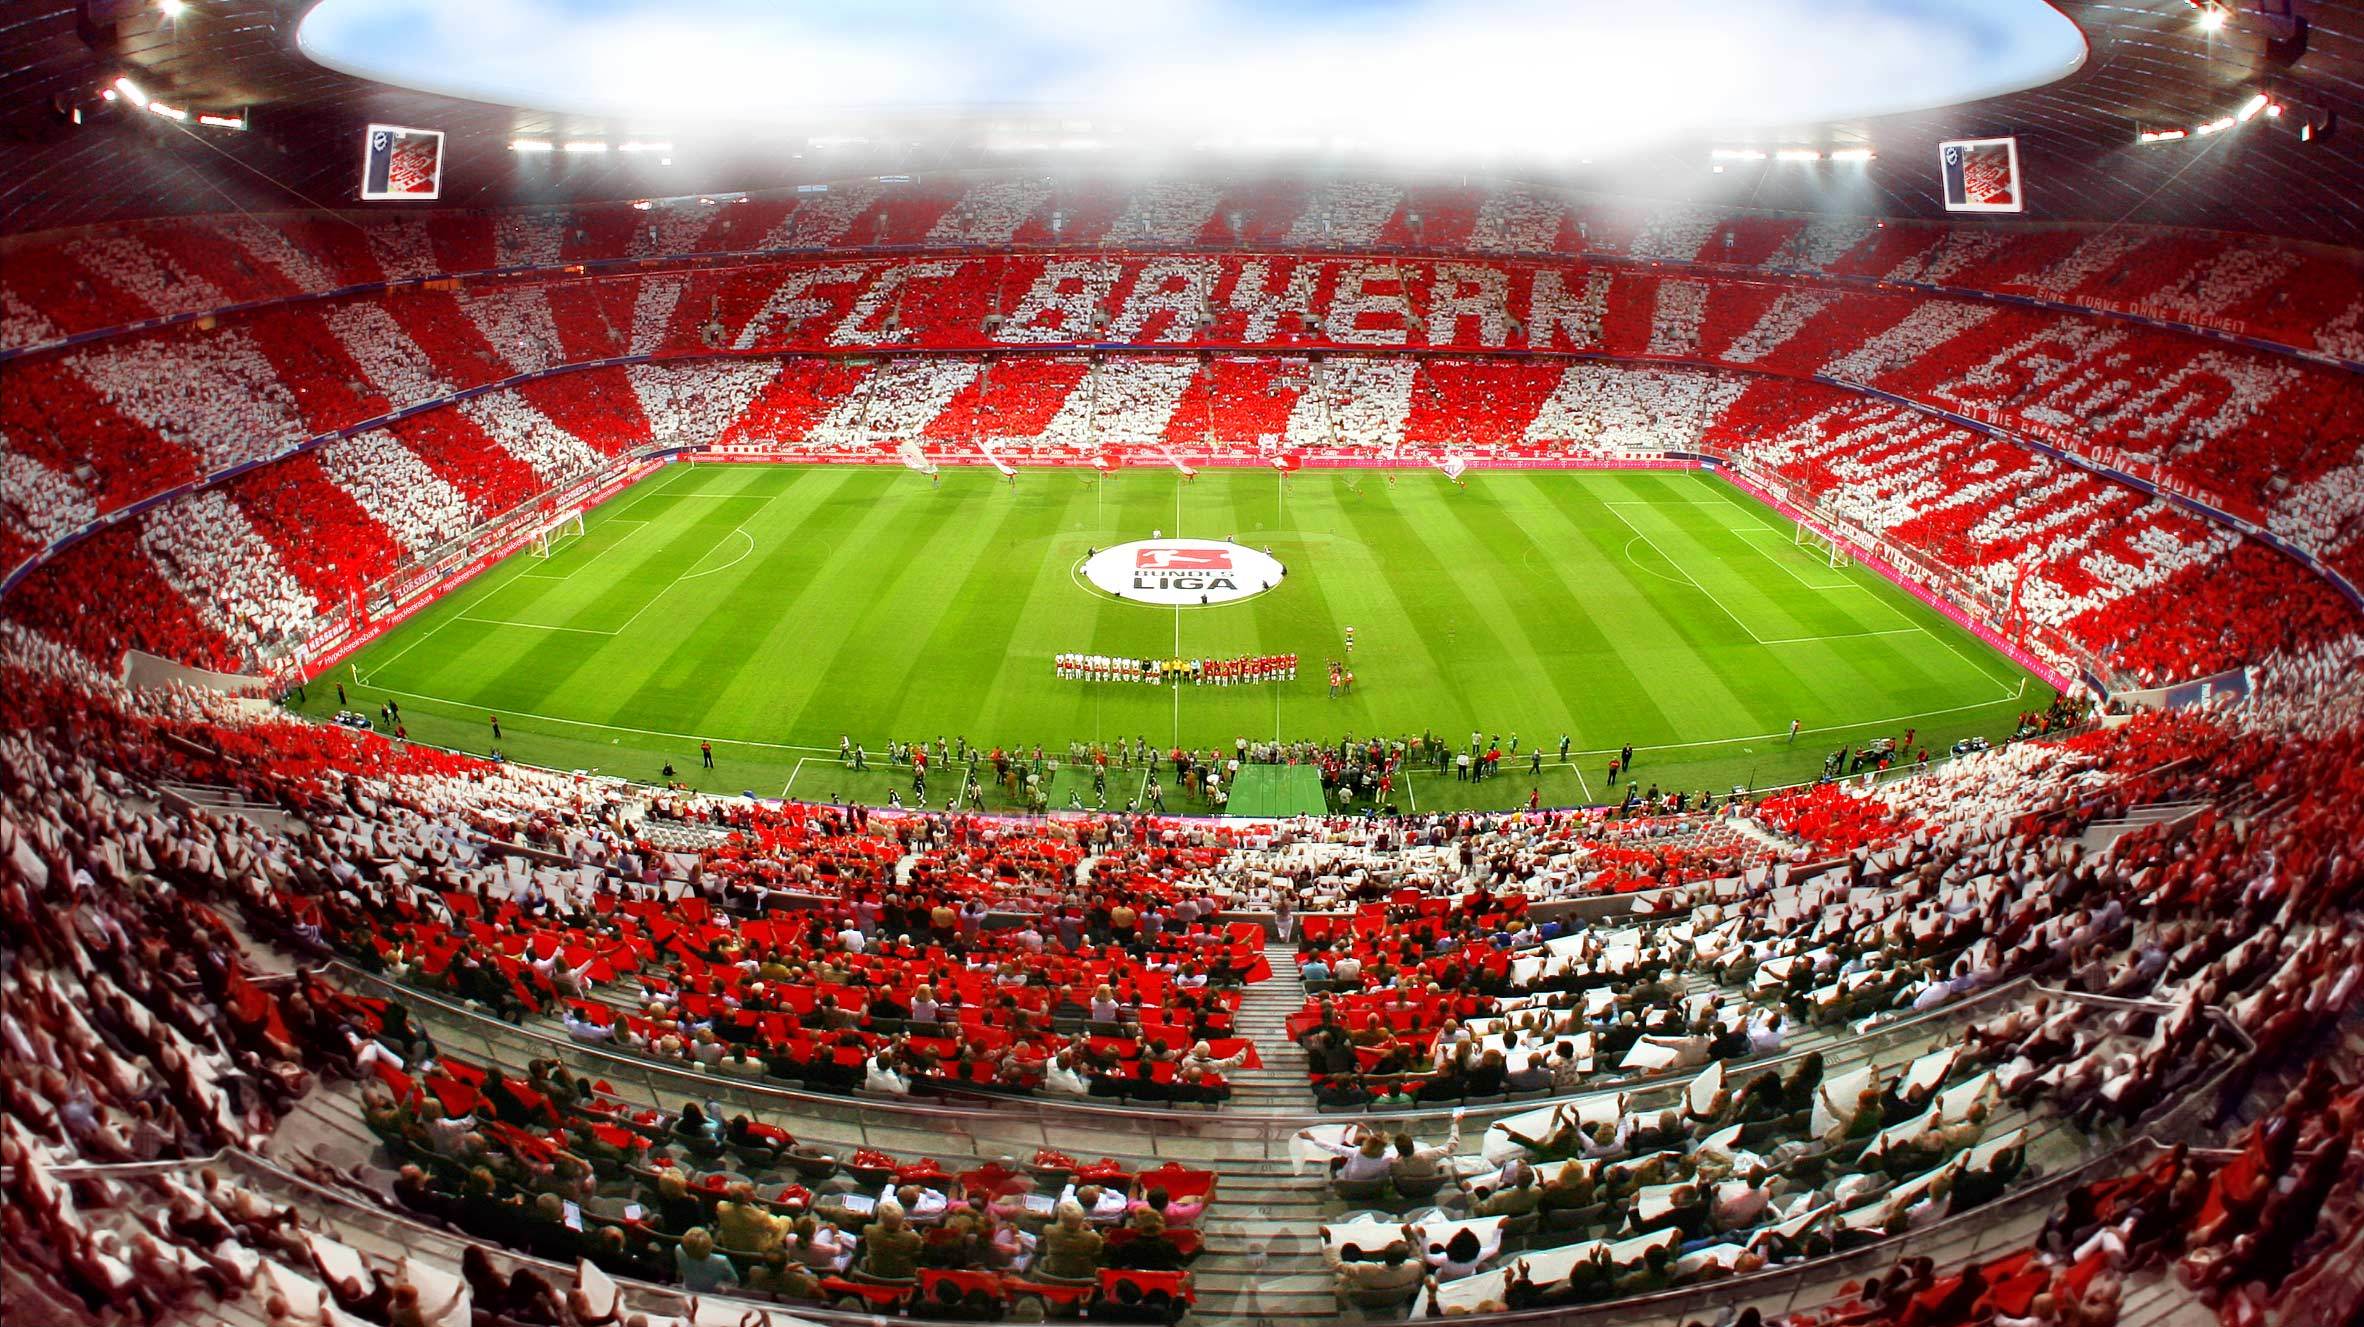 Estadio De Bayern Munchen , HD Wallpaper & Backgrounds